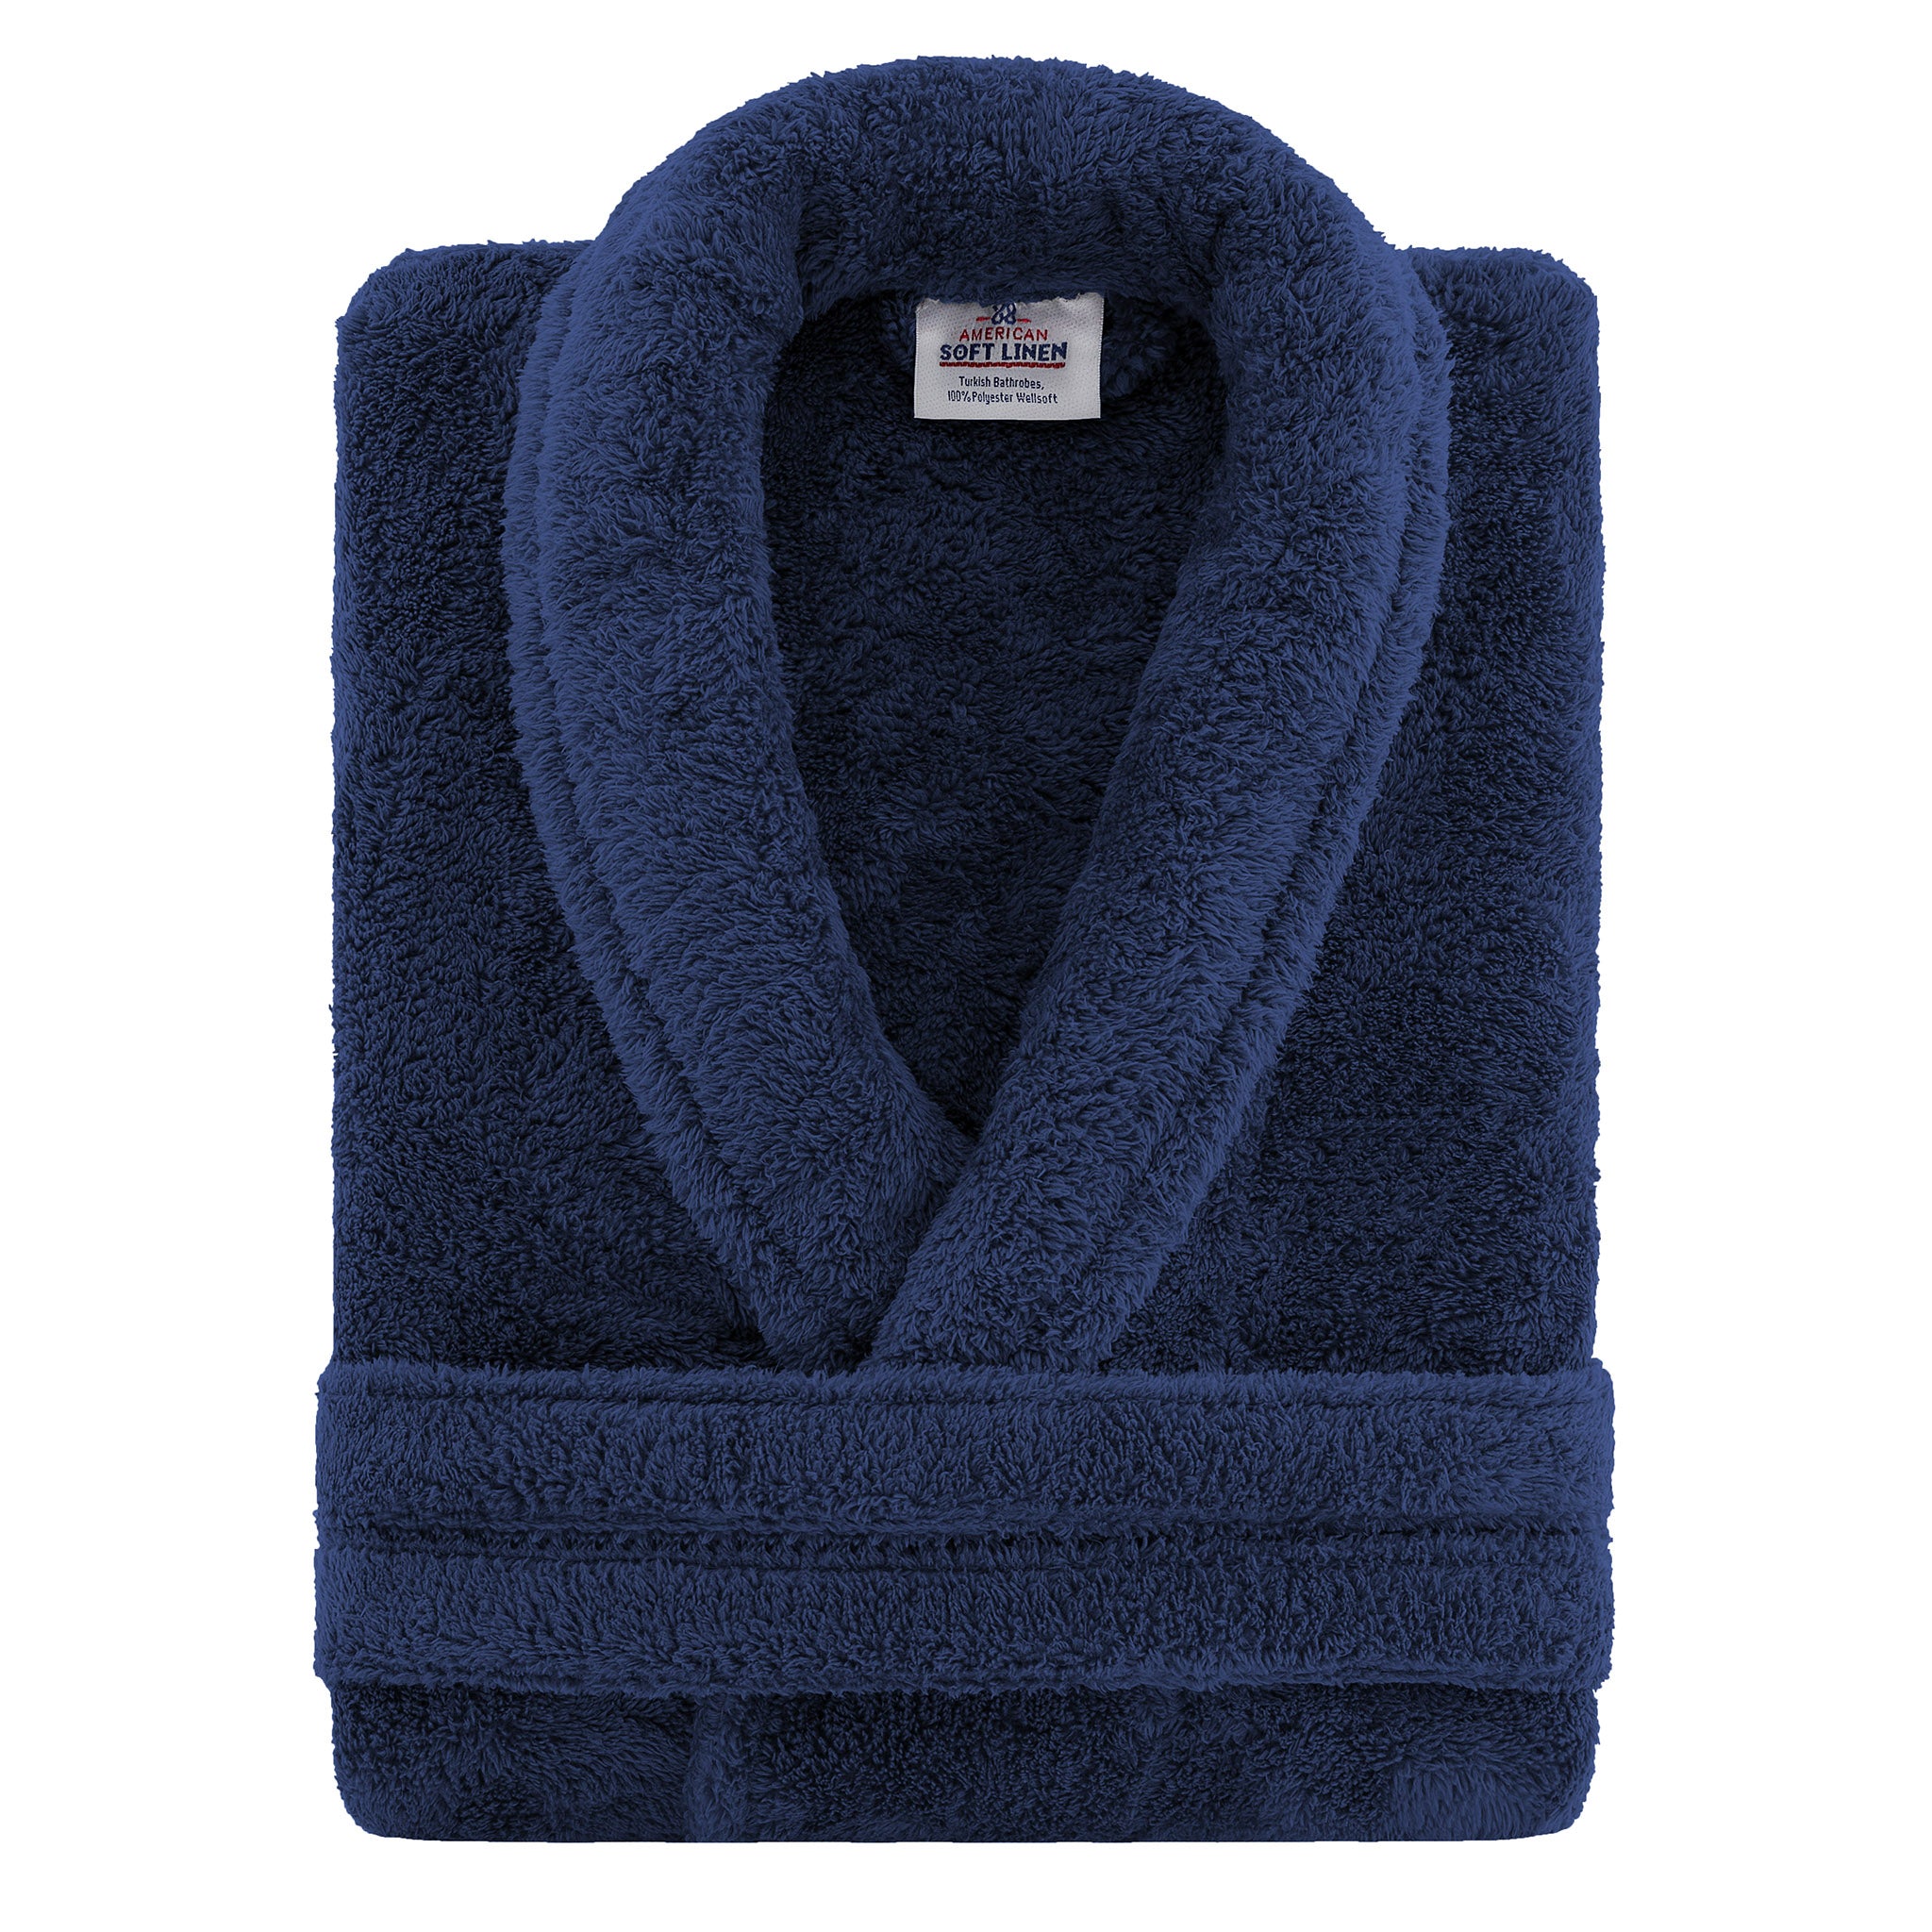 American Soft Linen Super Soft, Absorbent and Fluffy, Unisex Fleece Bathrobe L-XL-navy-blue-3